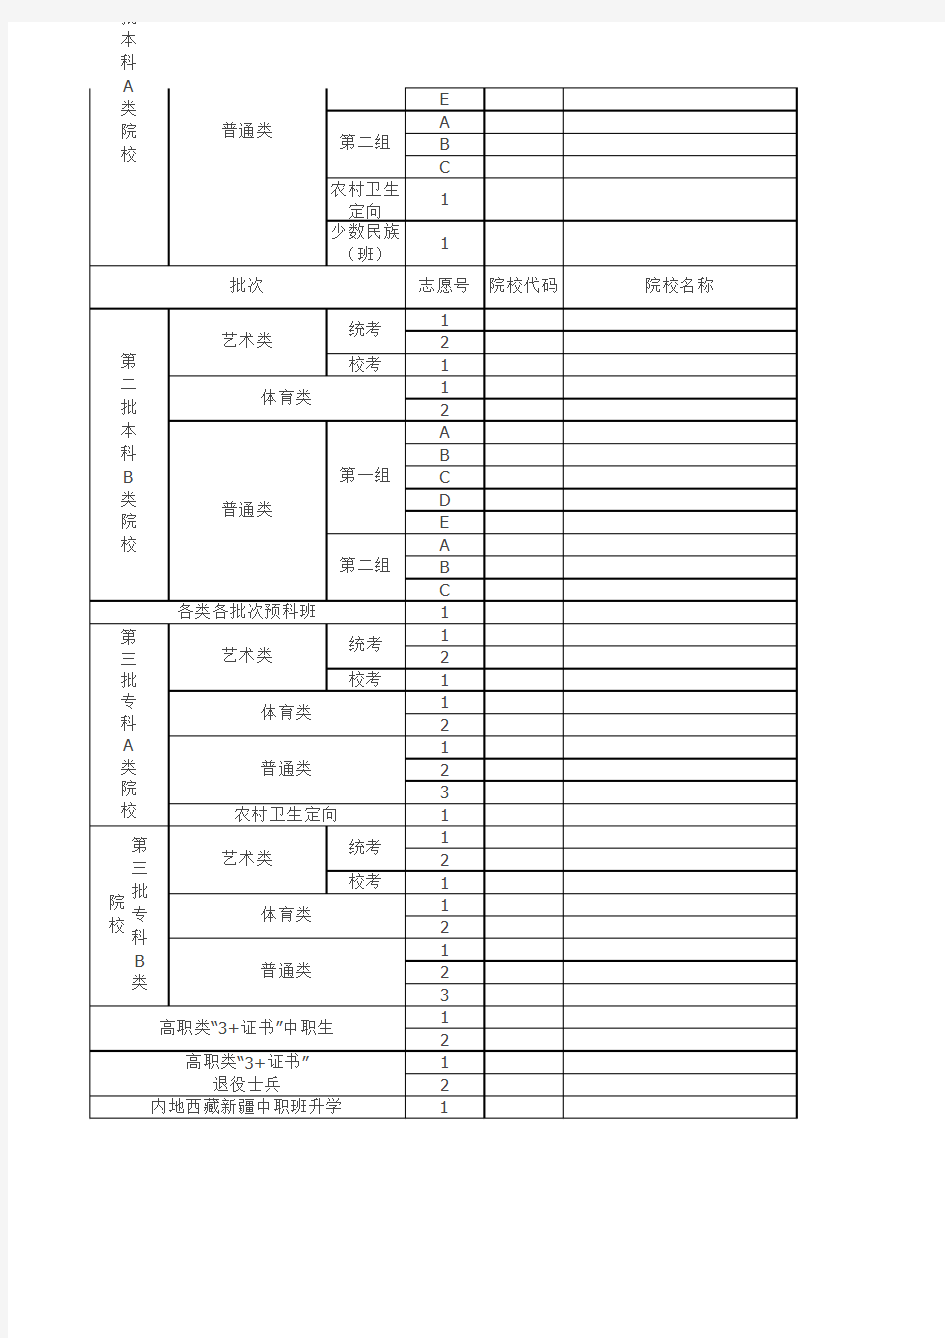 2015年广东省普通高校招生考试考生志愿表(样式)新修改版